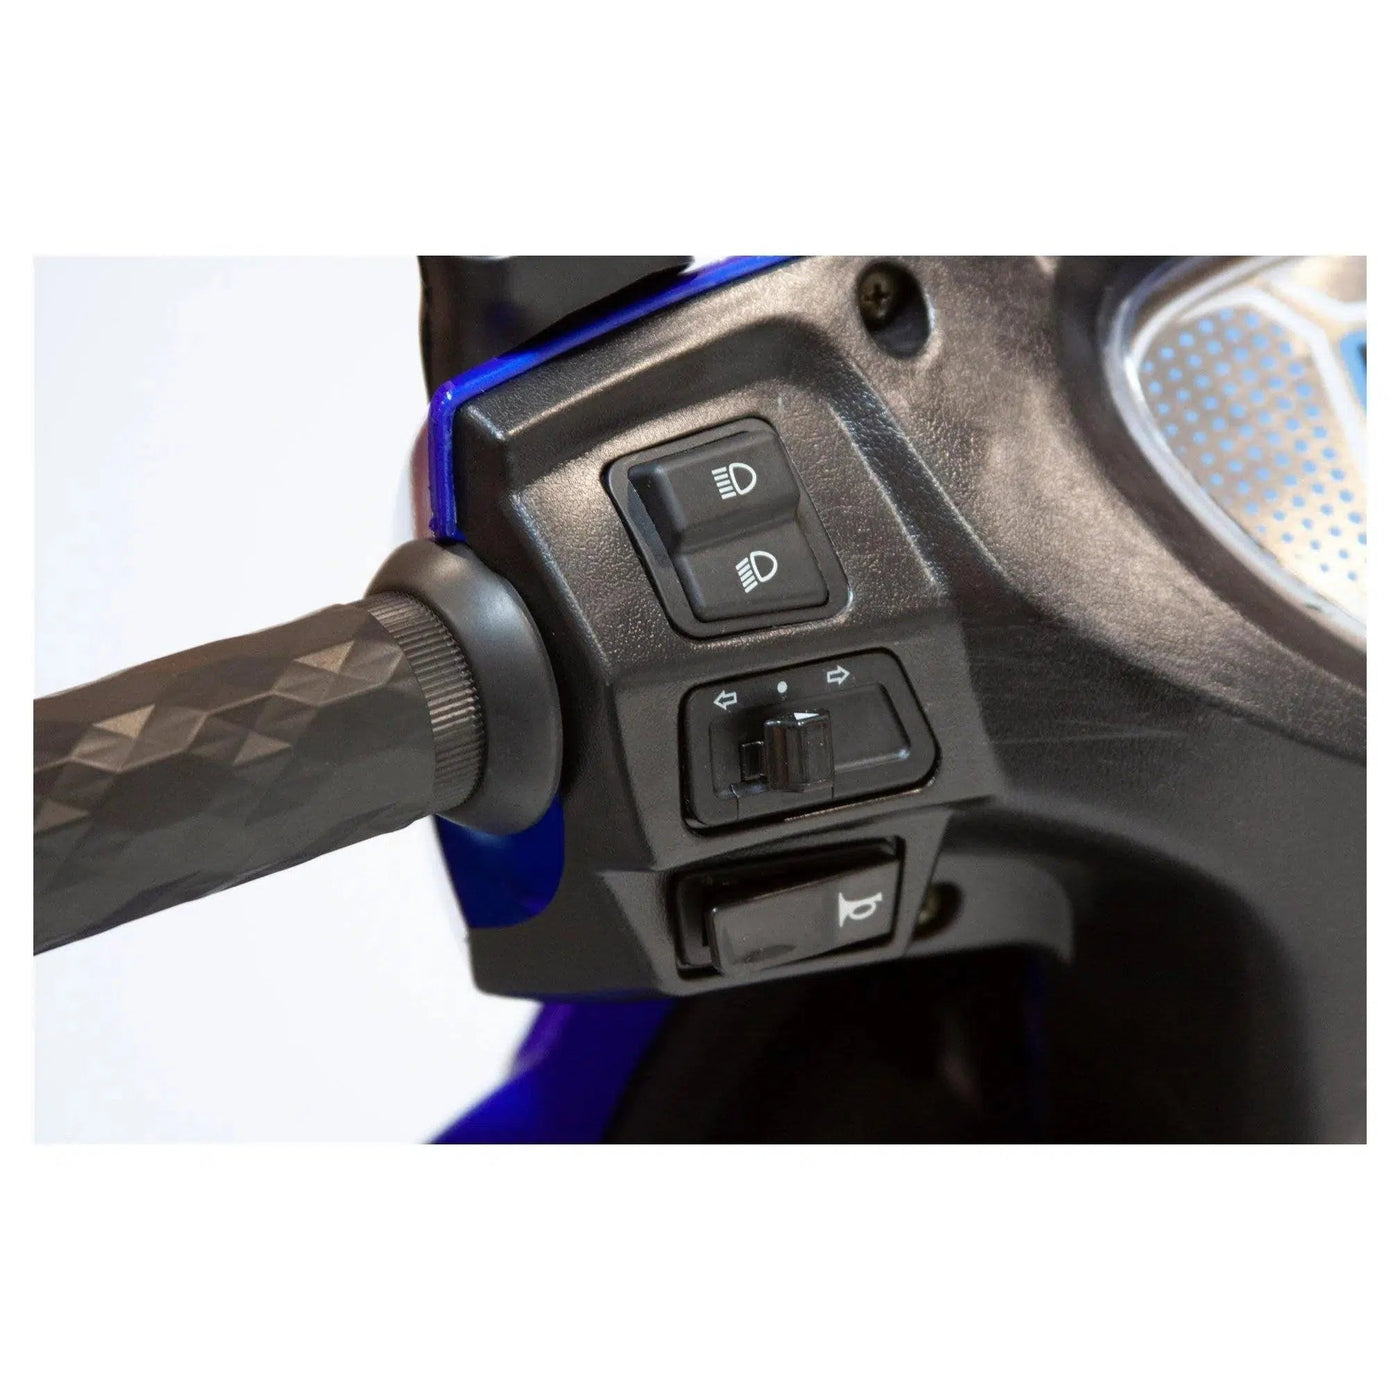 EWheels EW-72| 4 Wheel Heavy Duty, Electromagnetic Brakes Electric Mobility Scooter - eBike Haul